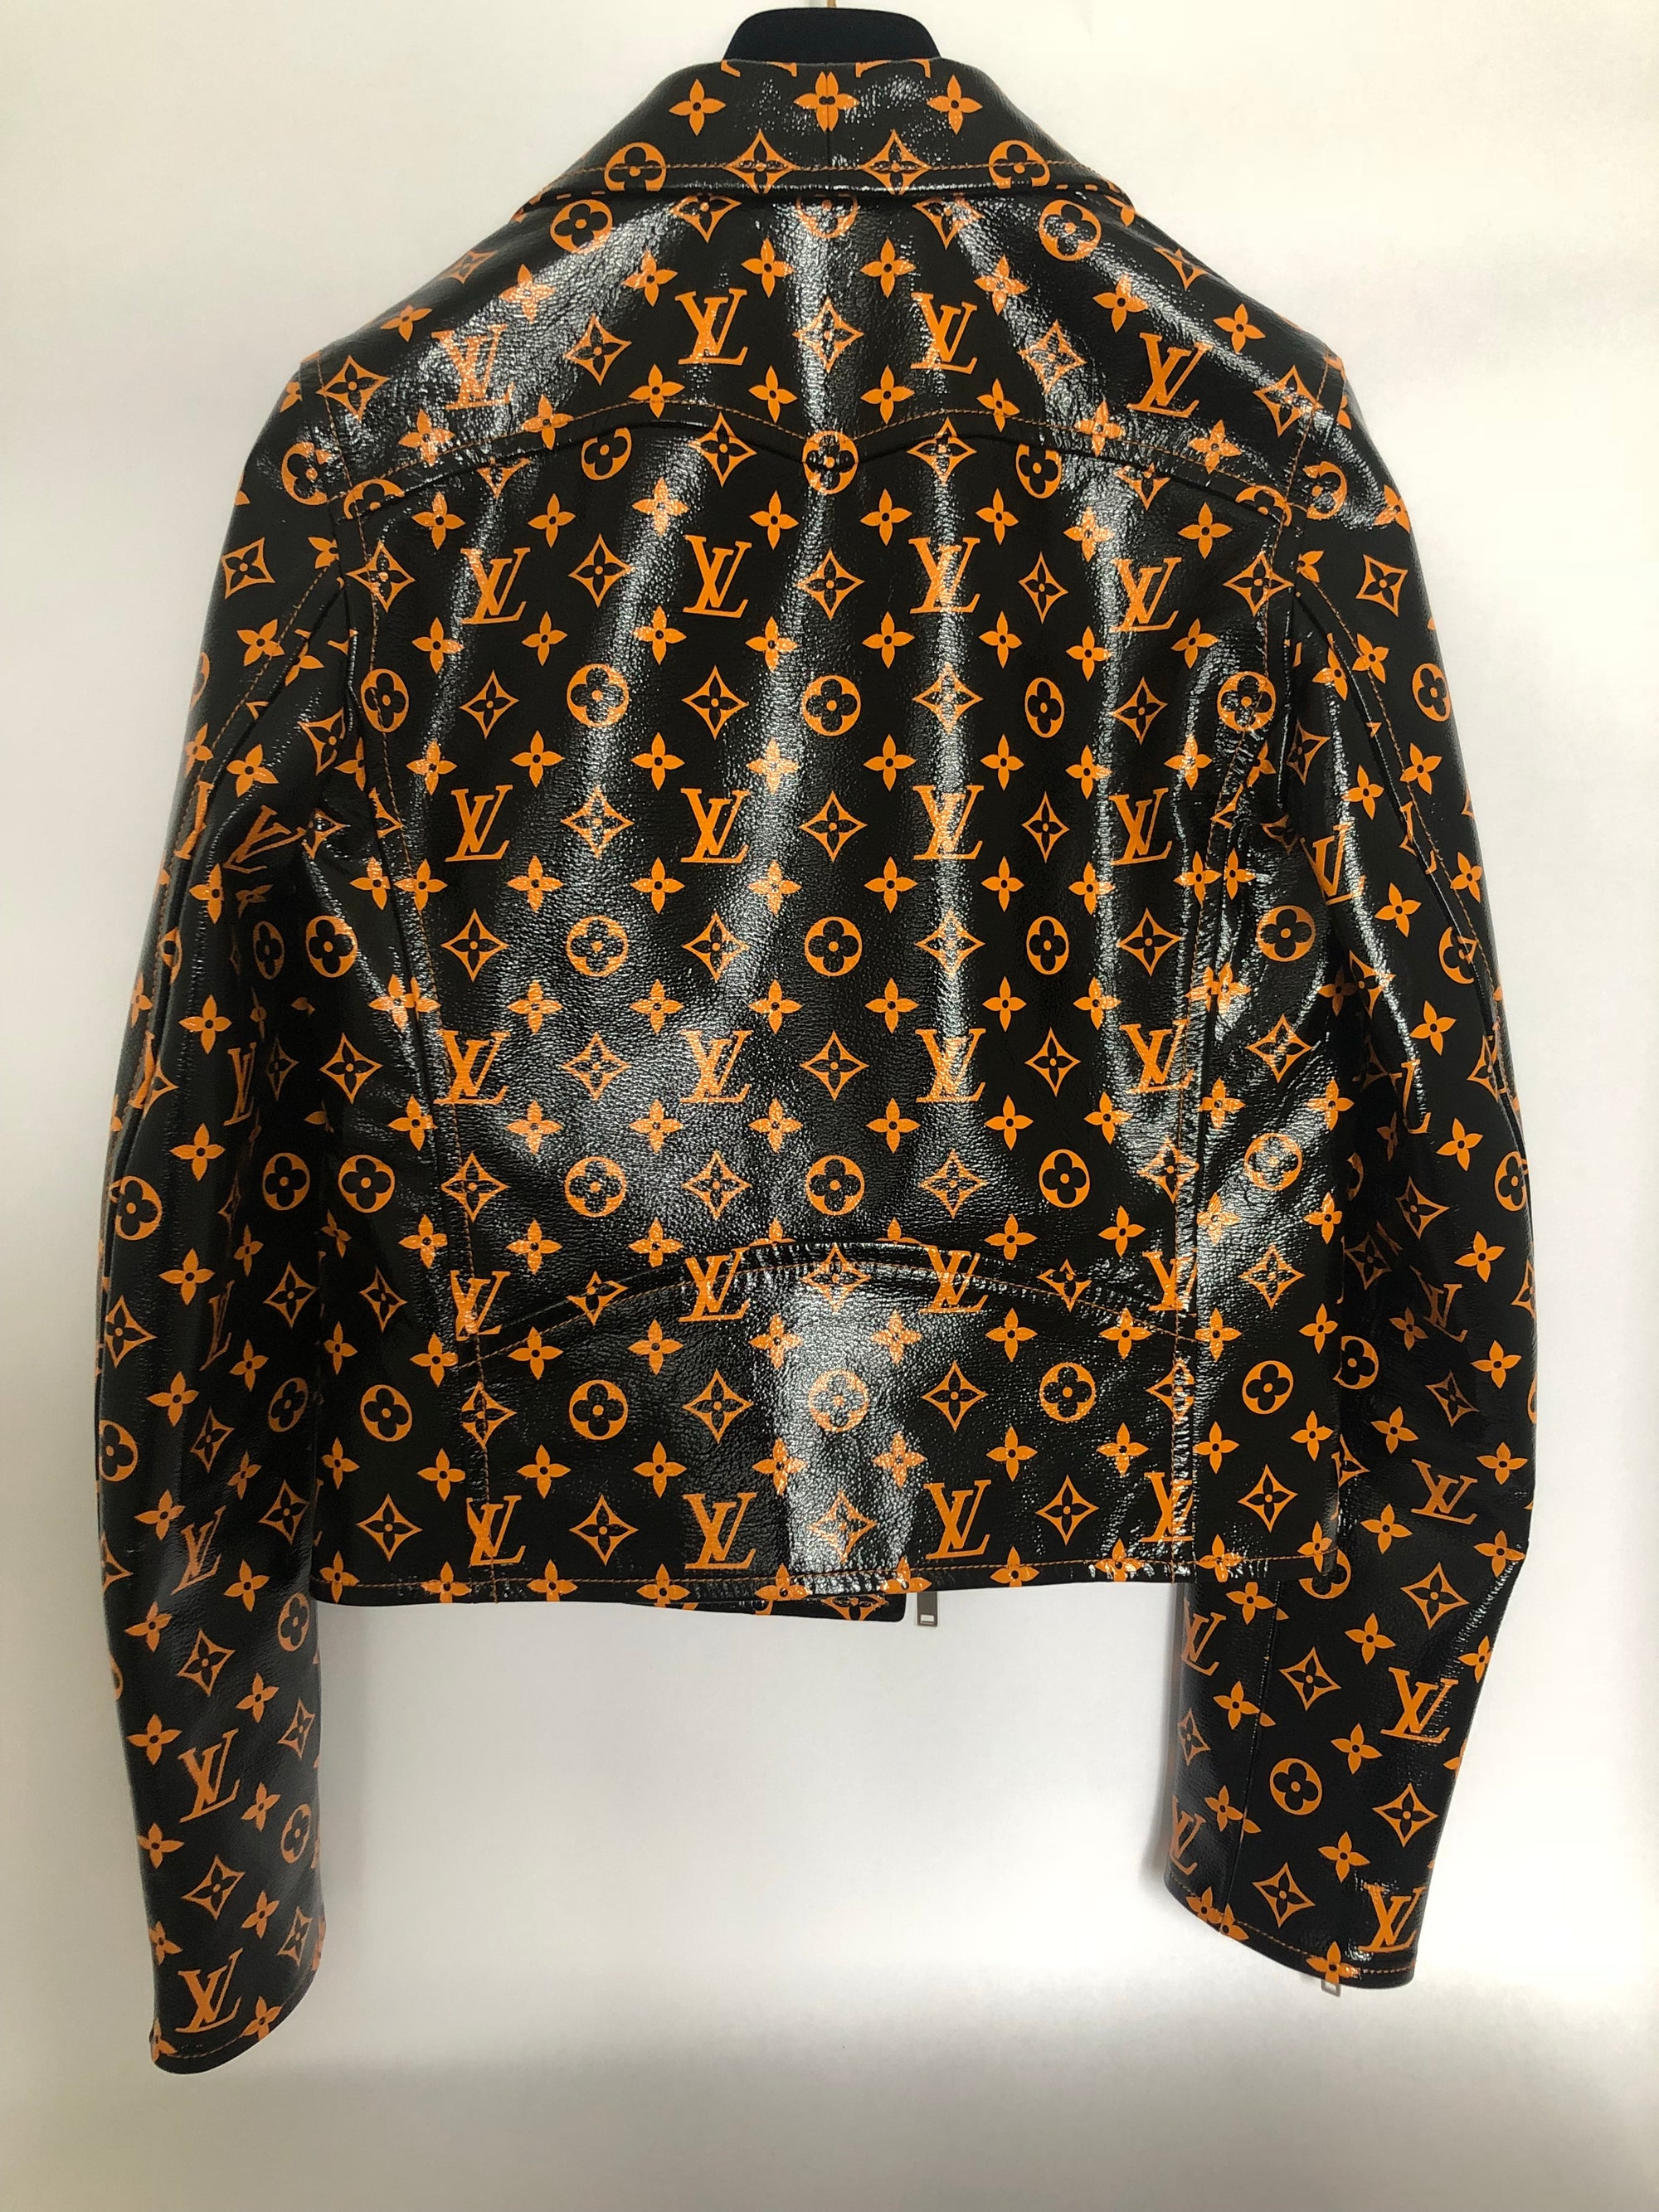 Louis Vuitton Monogram Printed Denim Jacket